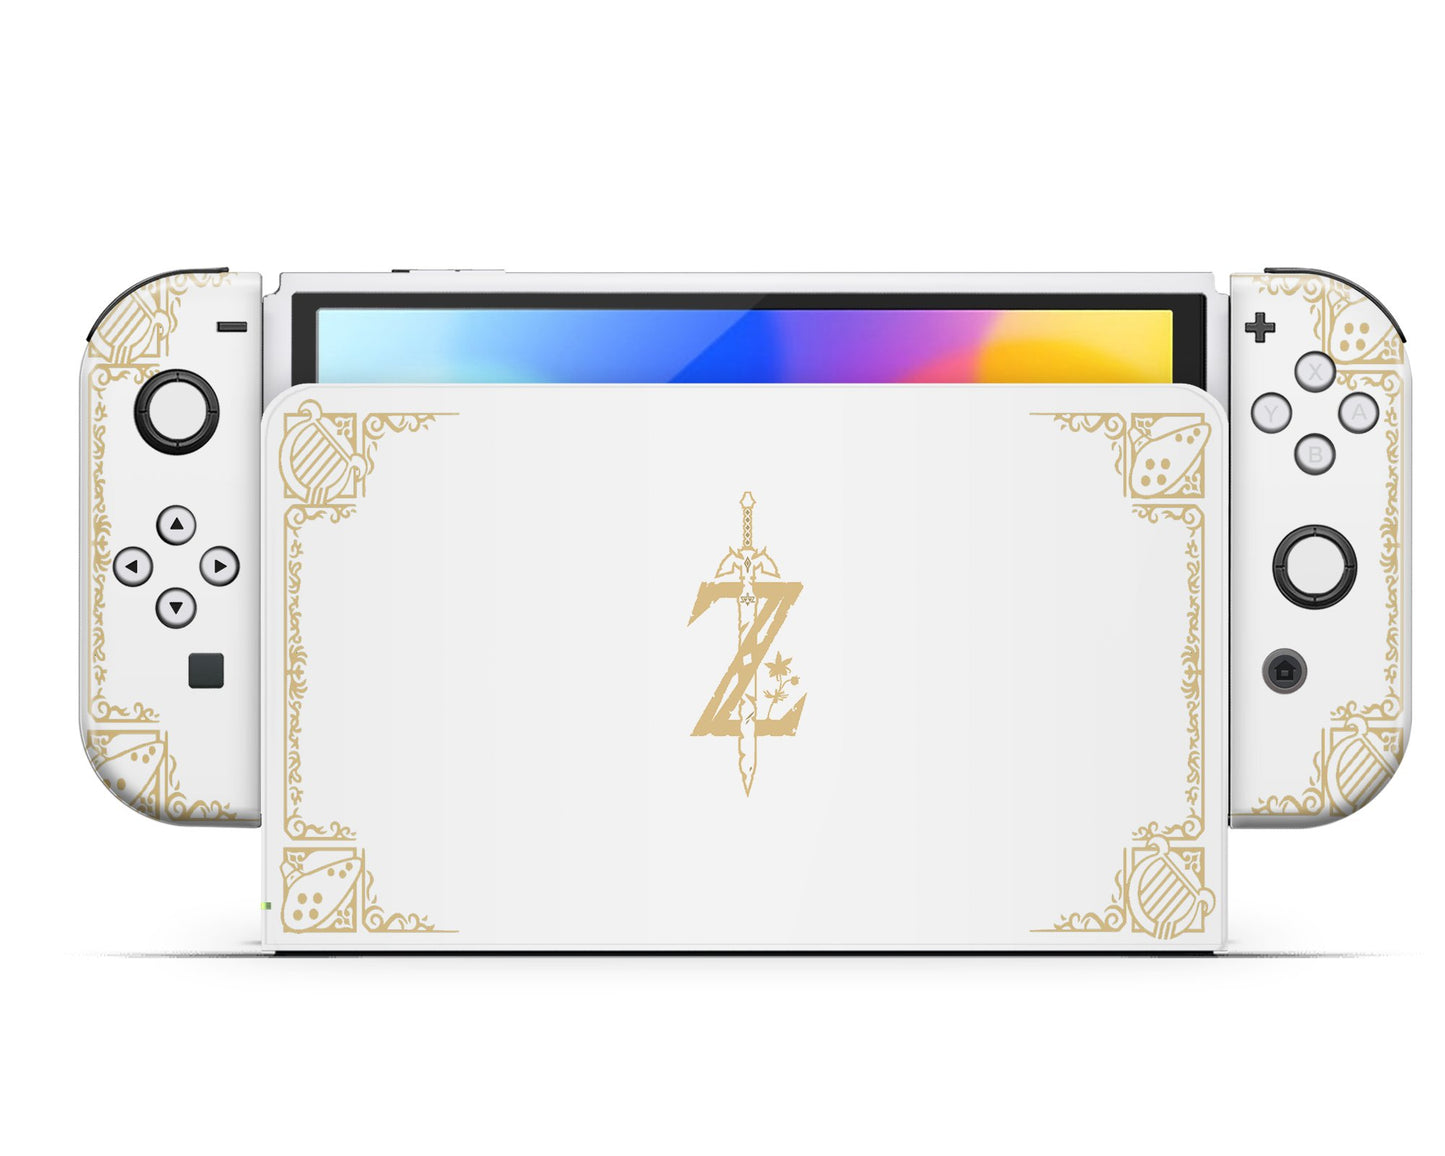 Lux Skins Nintendo Switch OLED Legend of Zelda White Gold Full Set Skins - Pop culture Zelda Skin